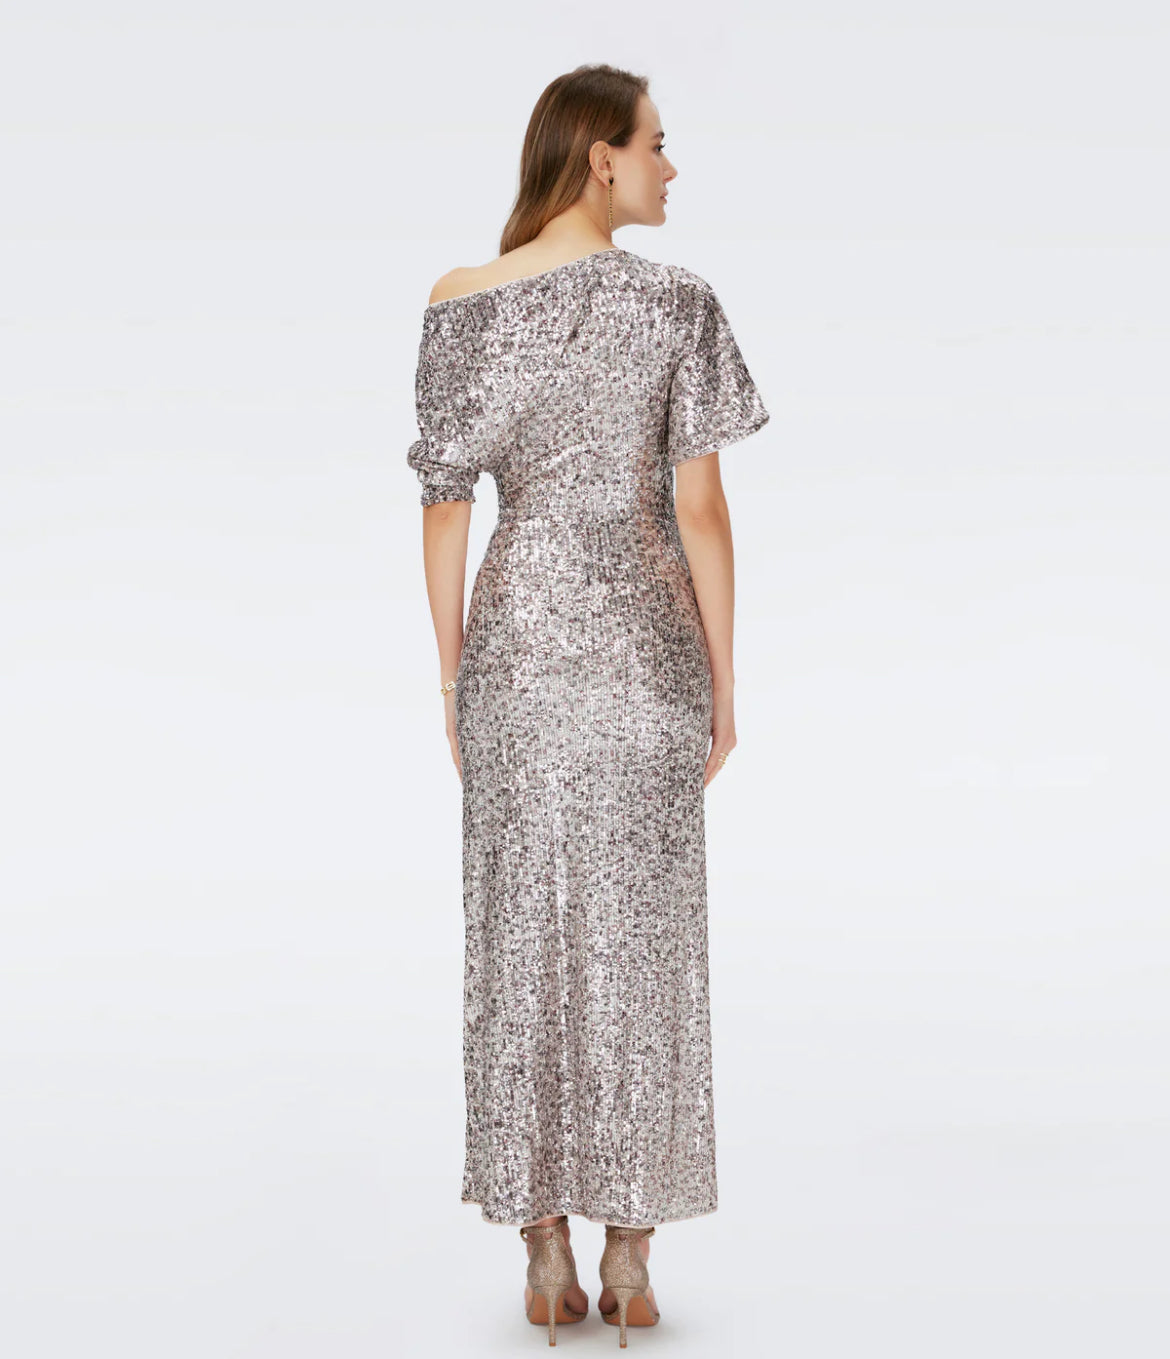 Diane Von Furstenberg - Wittrock Sequin Dress in Leopard